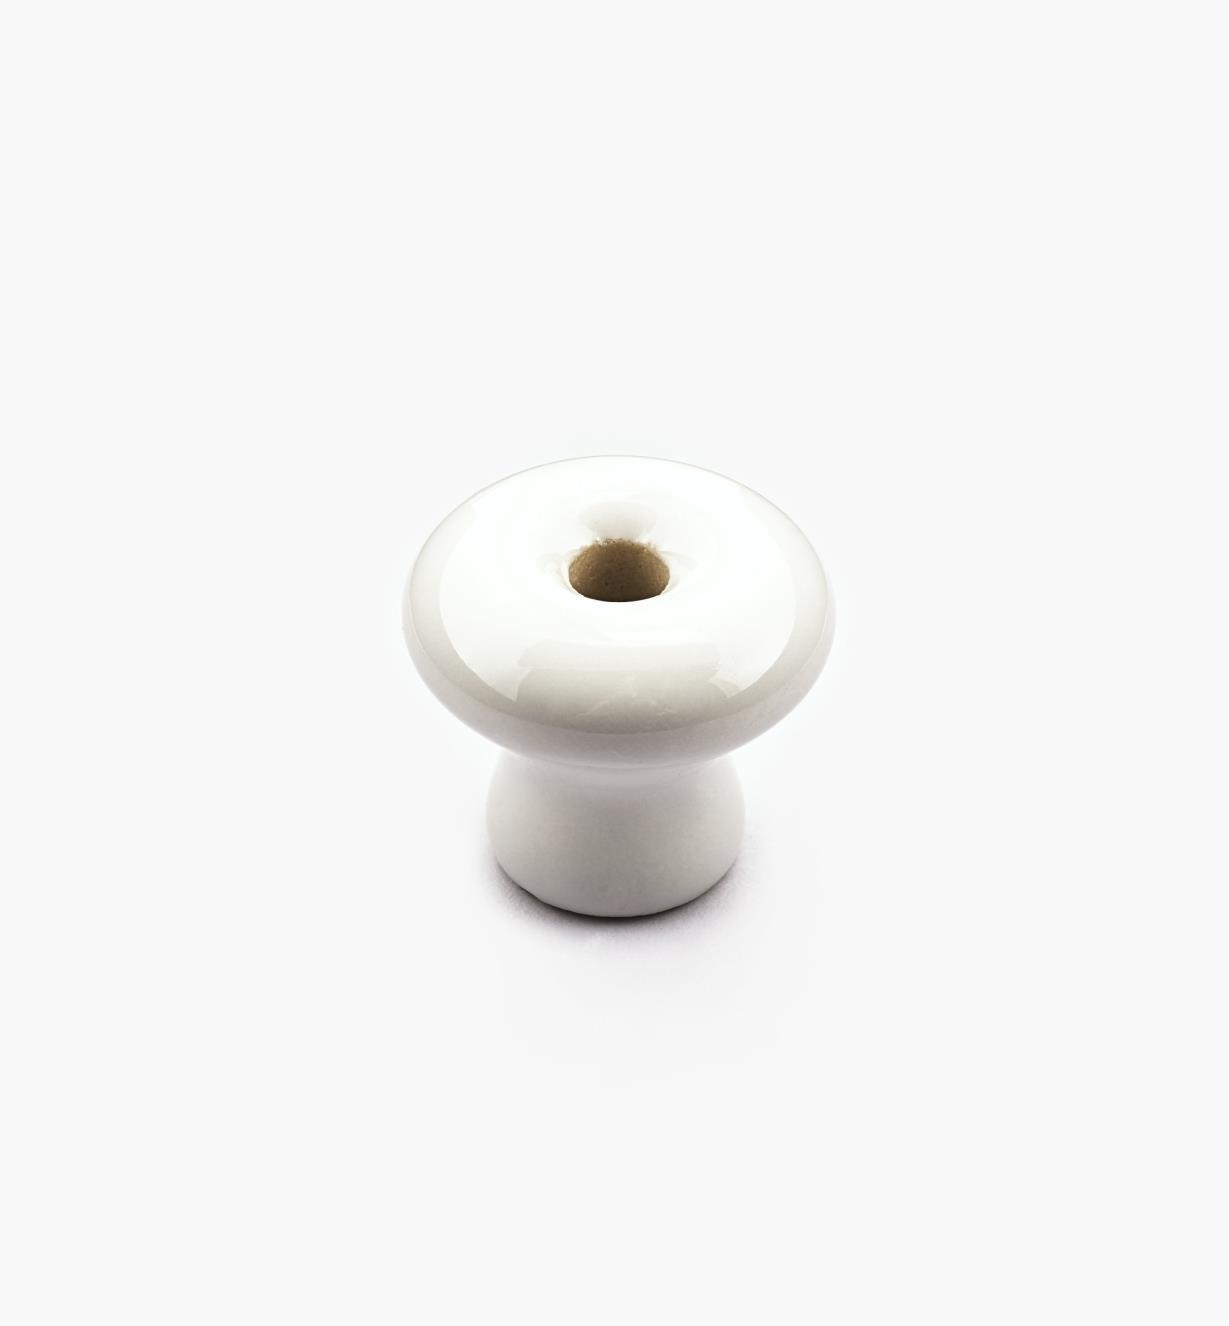 00W2810 - Bouton en céramique classique, blanc, 1 po x 3/4 po*